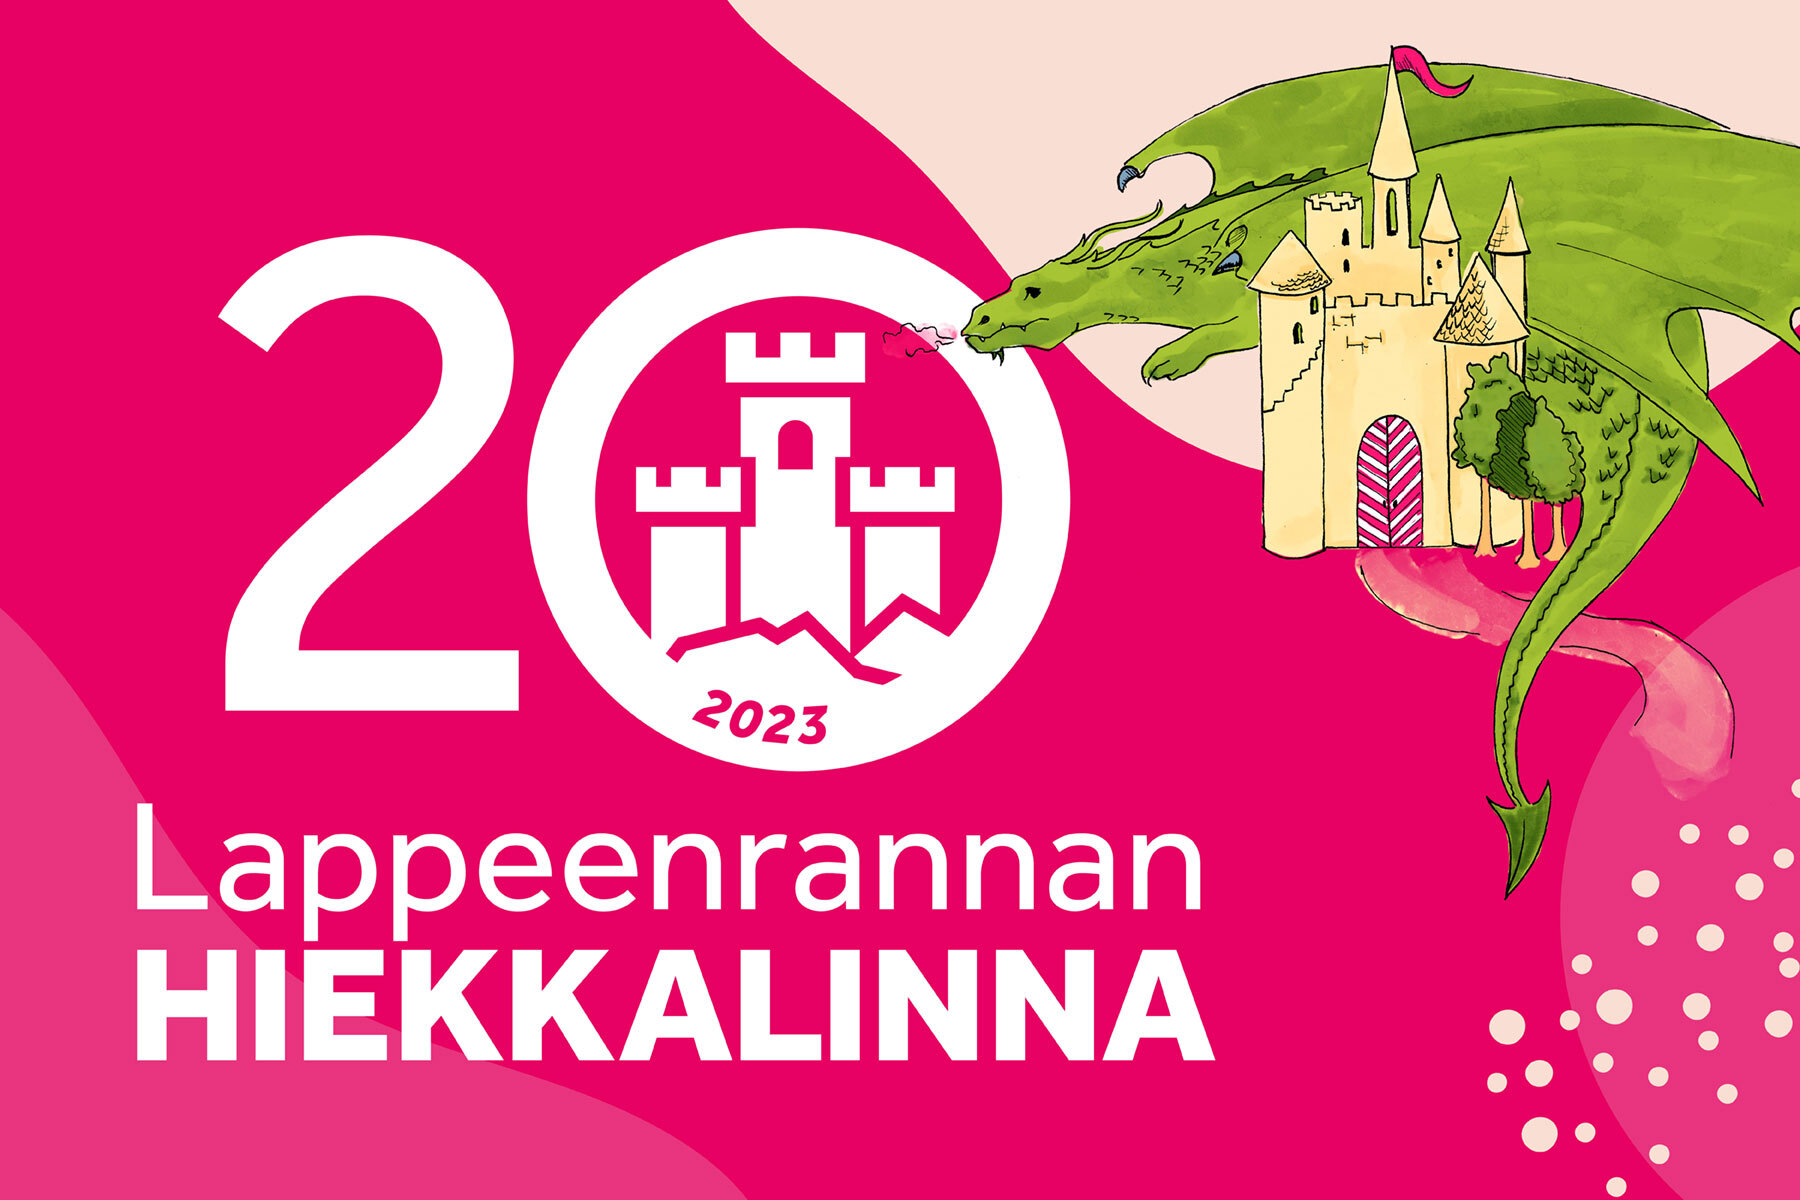 Hiekkalinnan juhlavuoden piirrosmainen markkinointi-ilme, jossa vaaleanpunaisella pohjalla teksti ”20 Lappeenrannan Hiekkalinna” sekä lohikäärme ja linna.